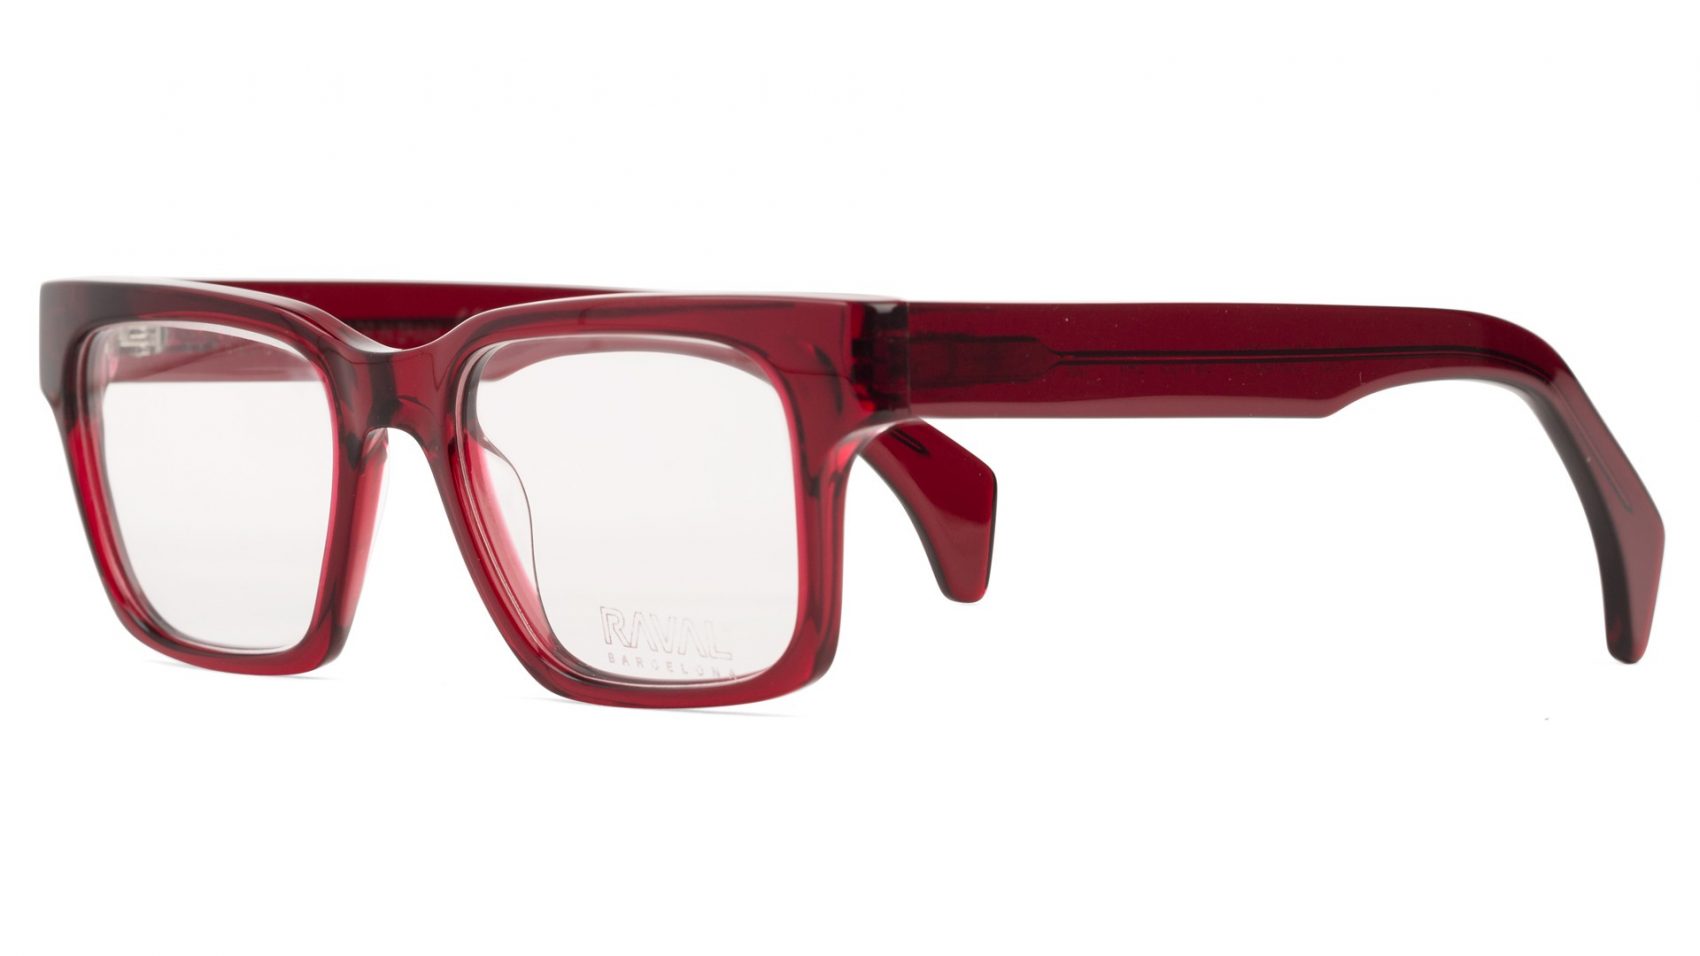 Gafas de vista Retro Style ROBADORA by Raval Eyewear-Óptica Gran Vía Barcelona